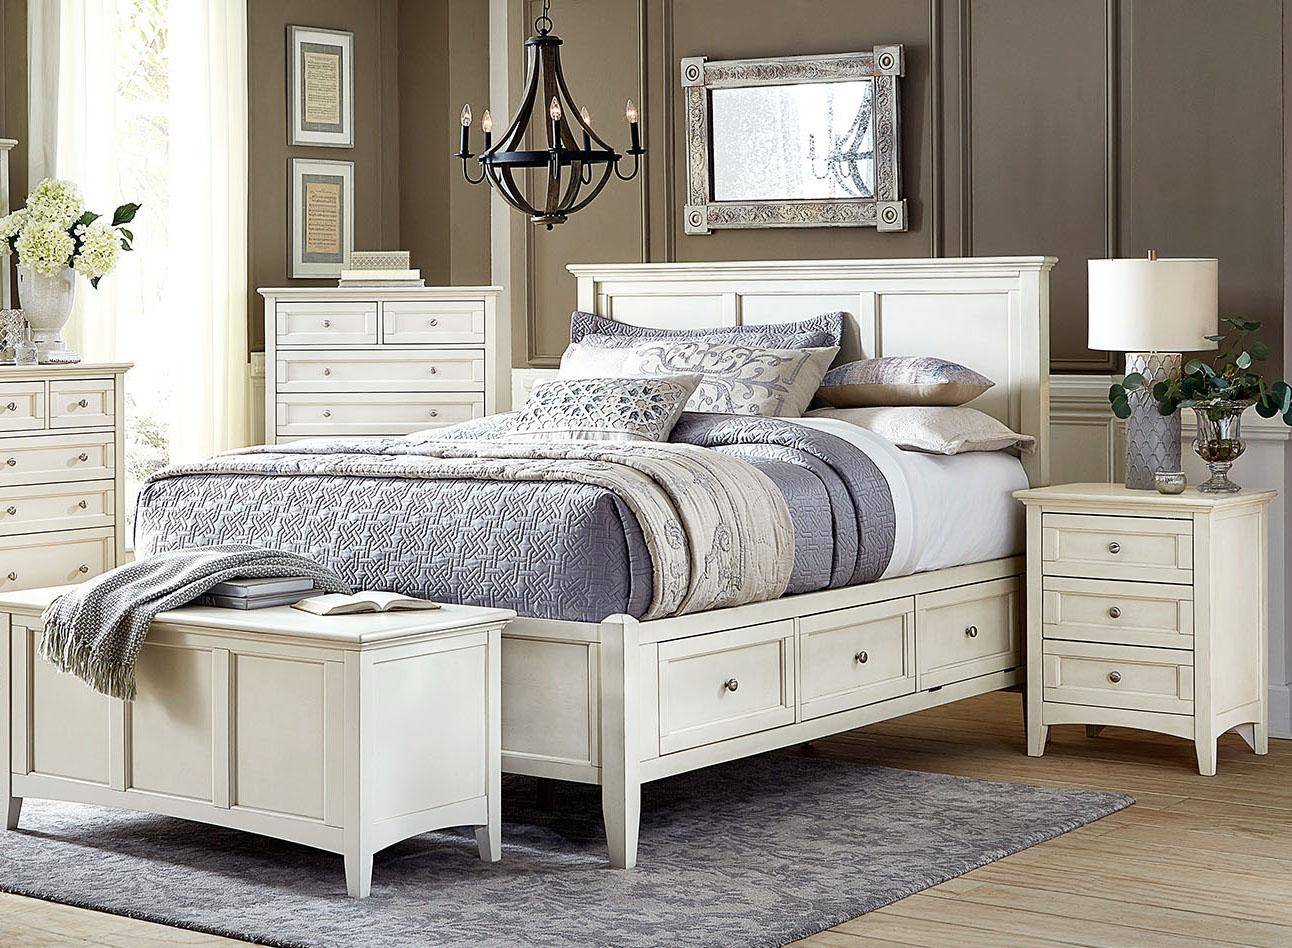 buy white wood bedroom furniture